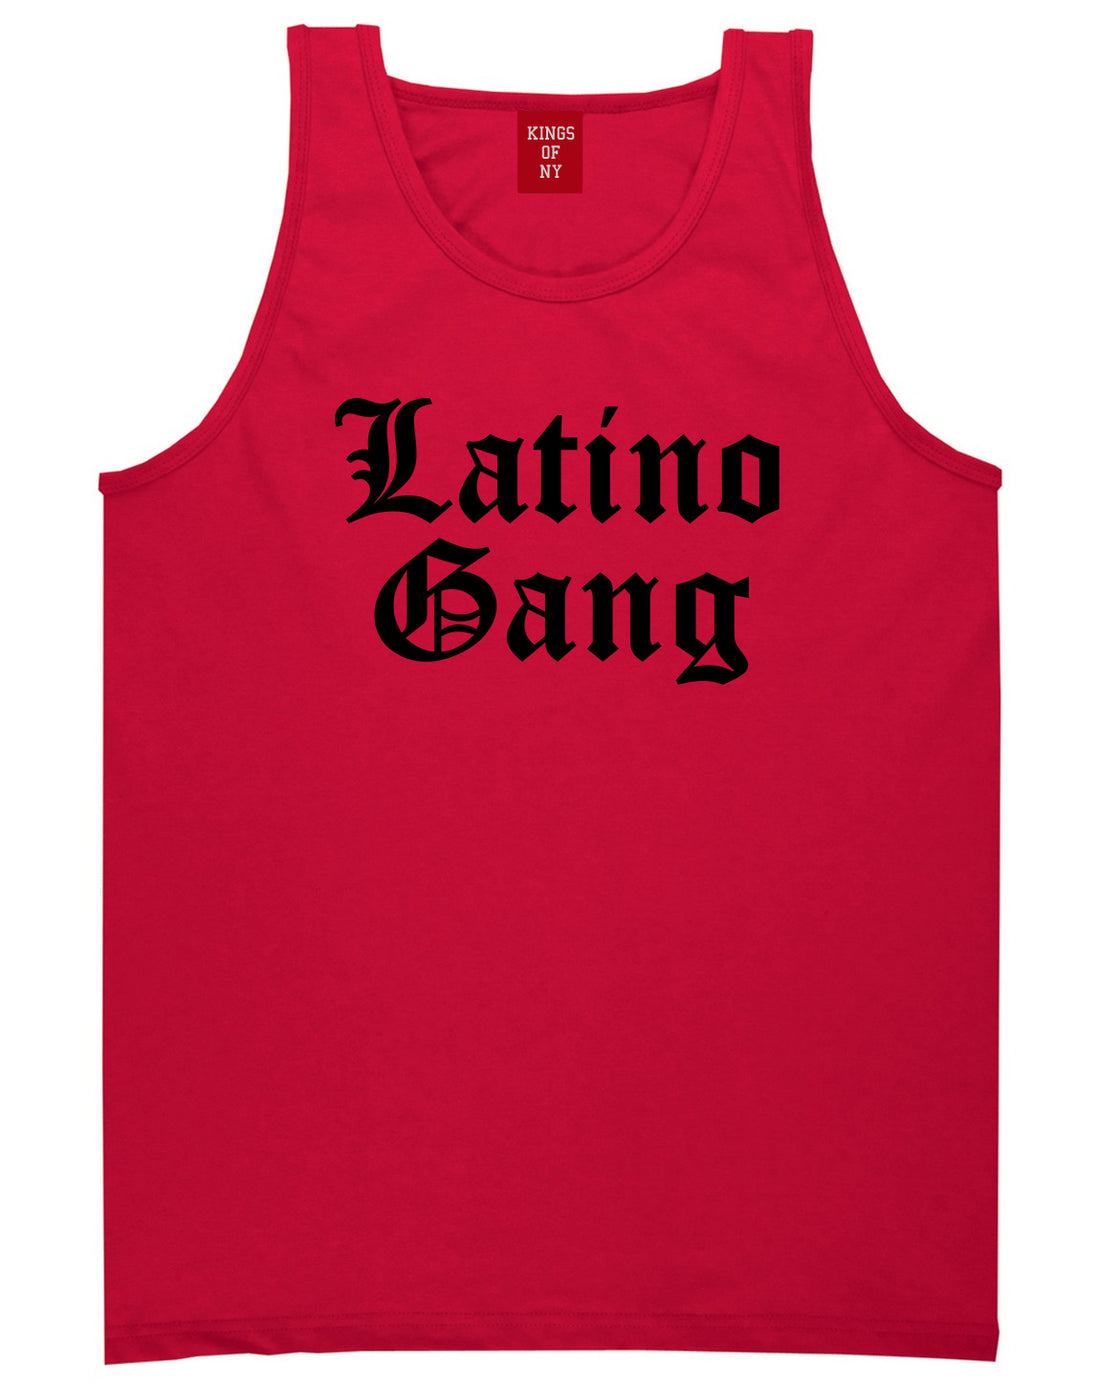 Latino Gang Mens Tank Top Shirt Red by Kings Of NY